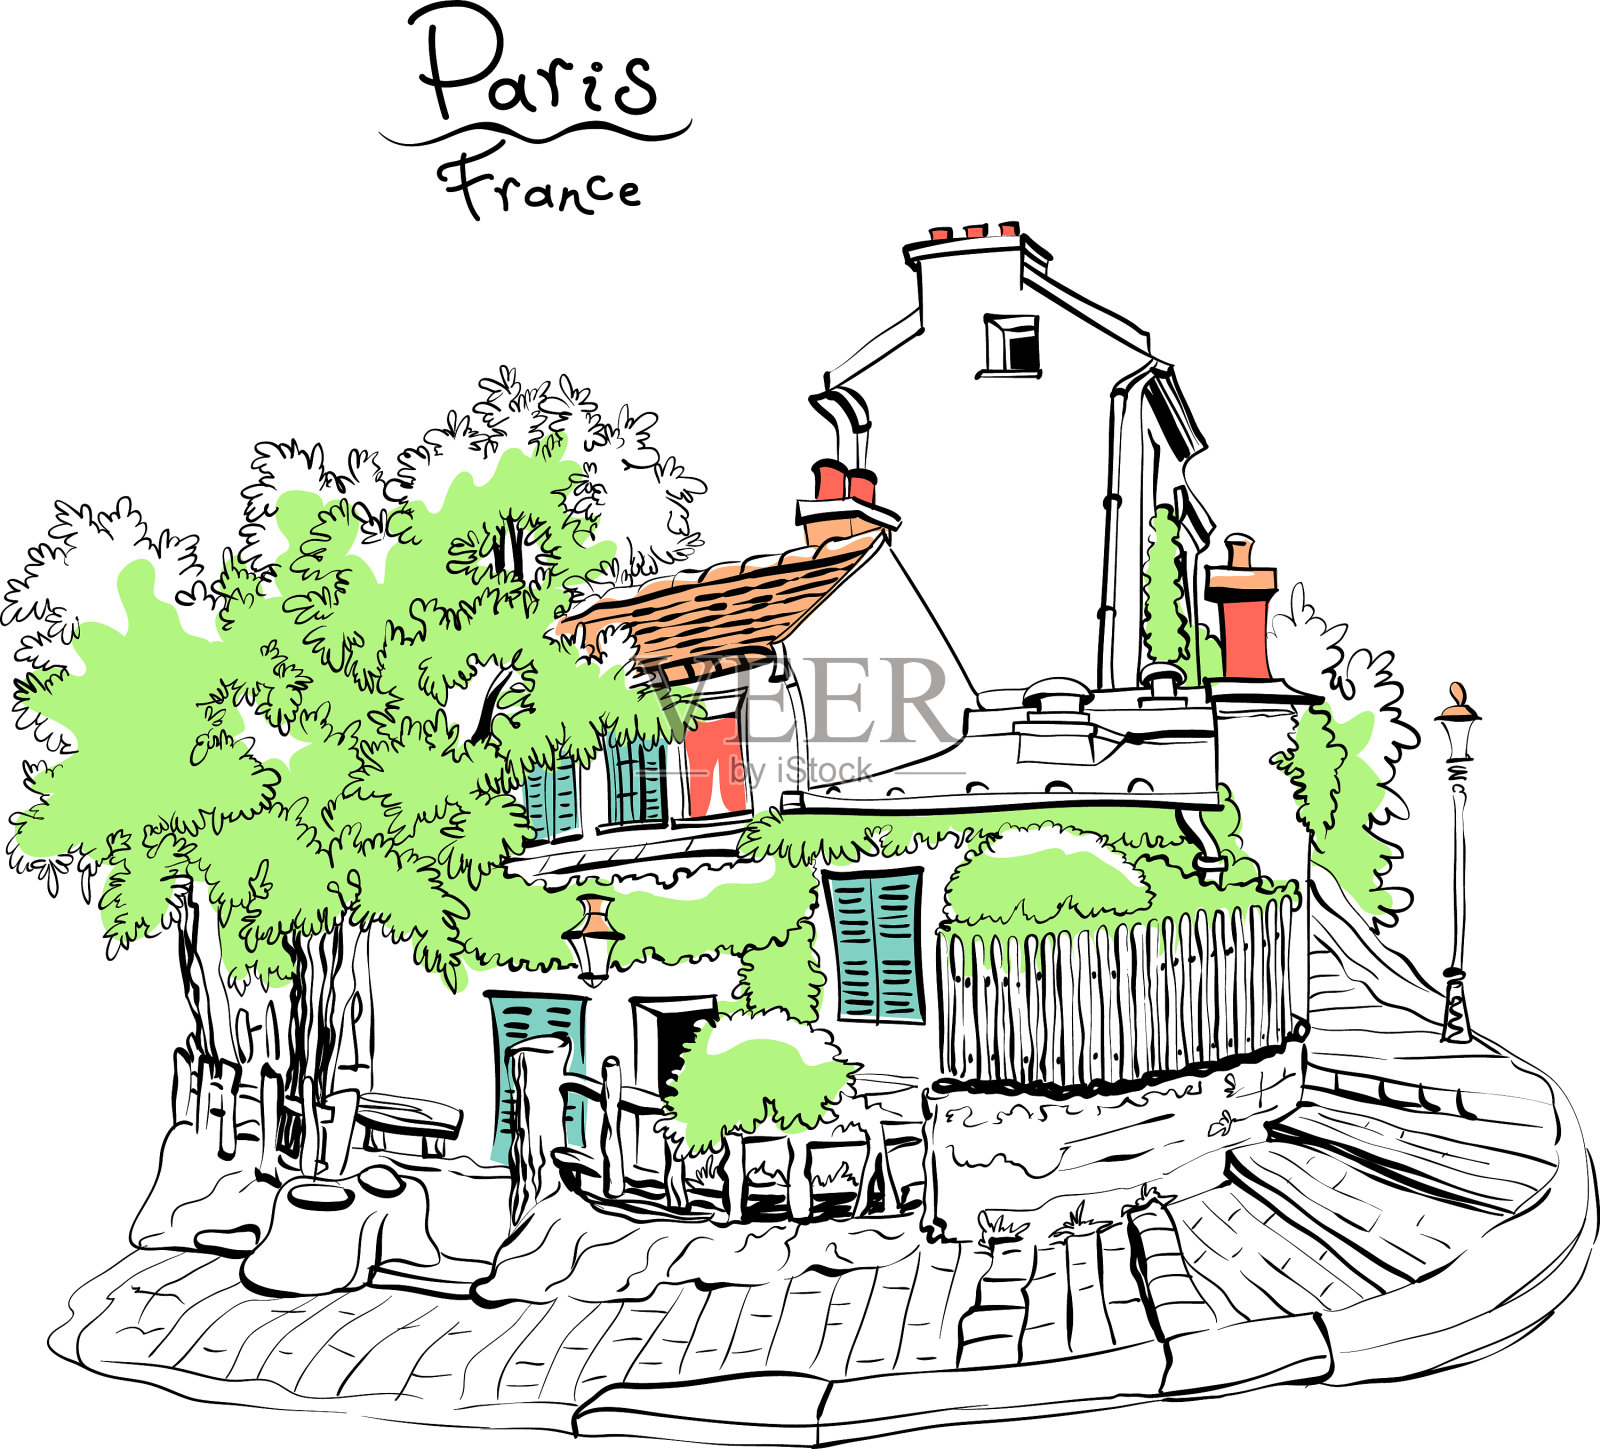 典型的巴黎住宅法国插画图片素材